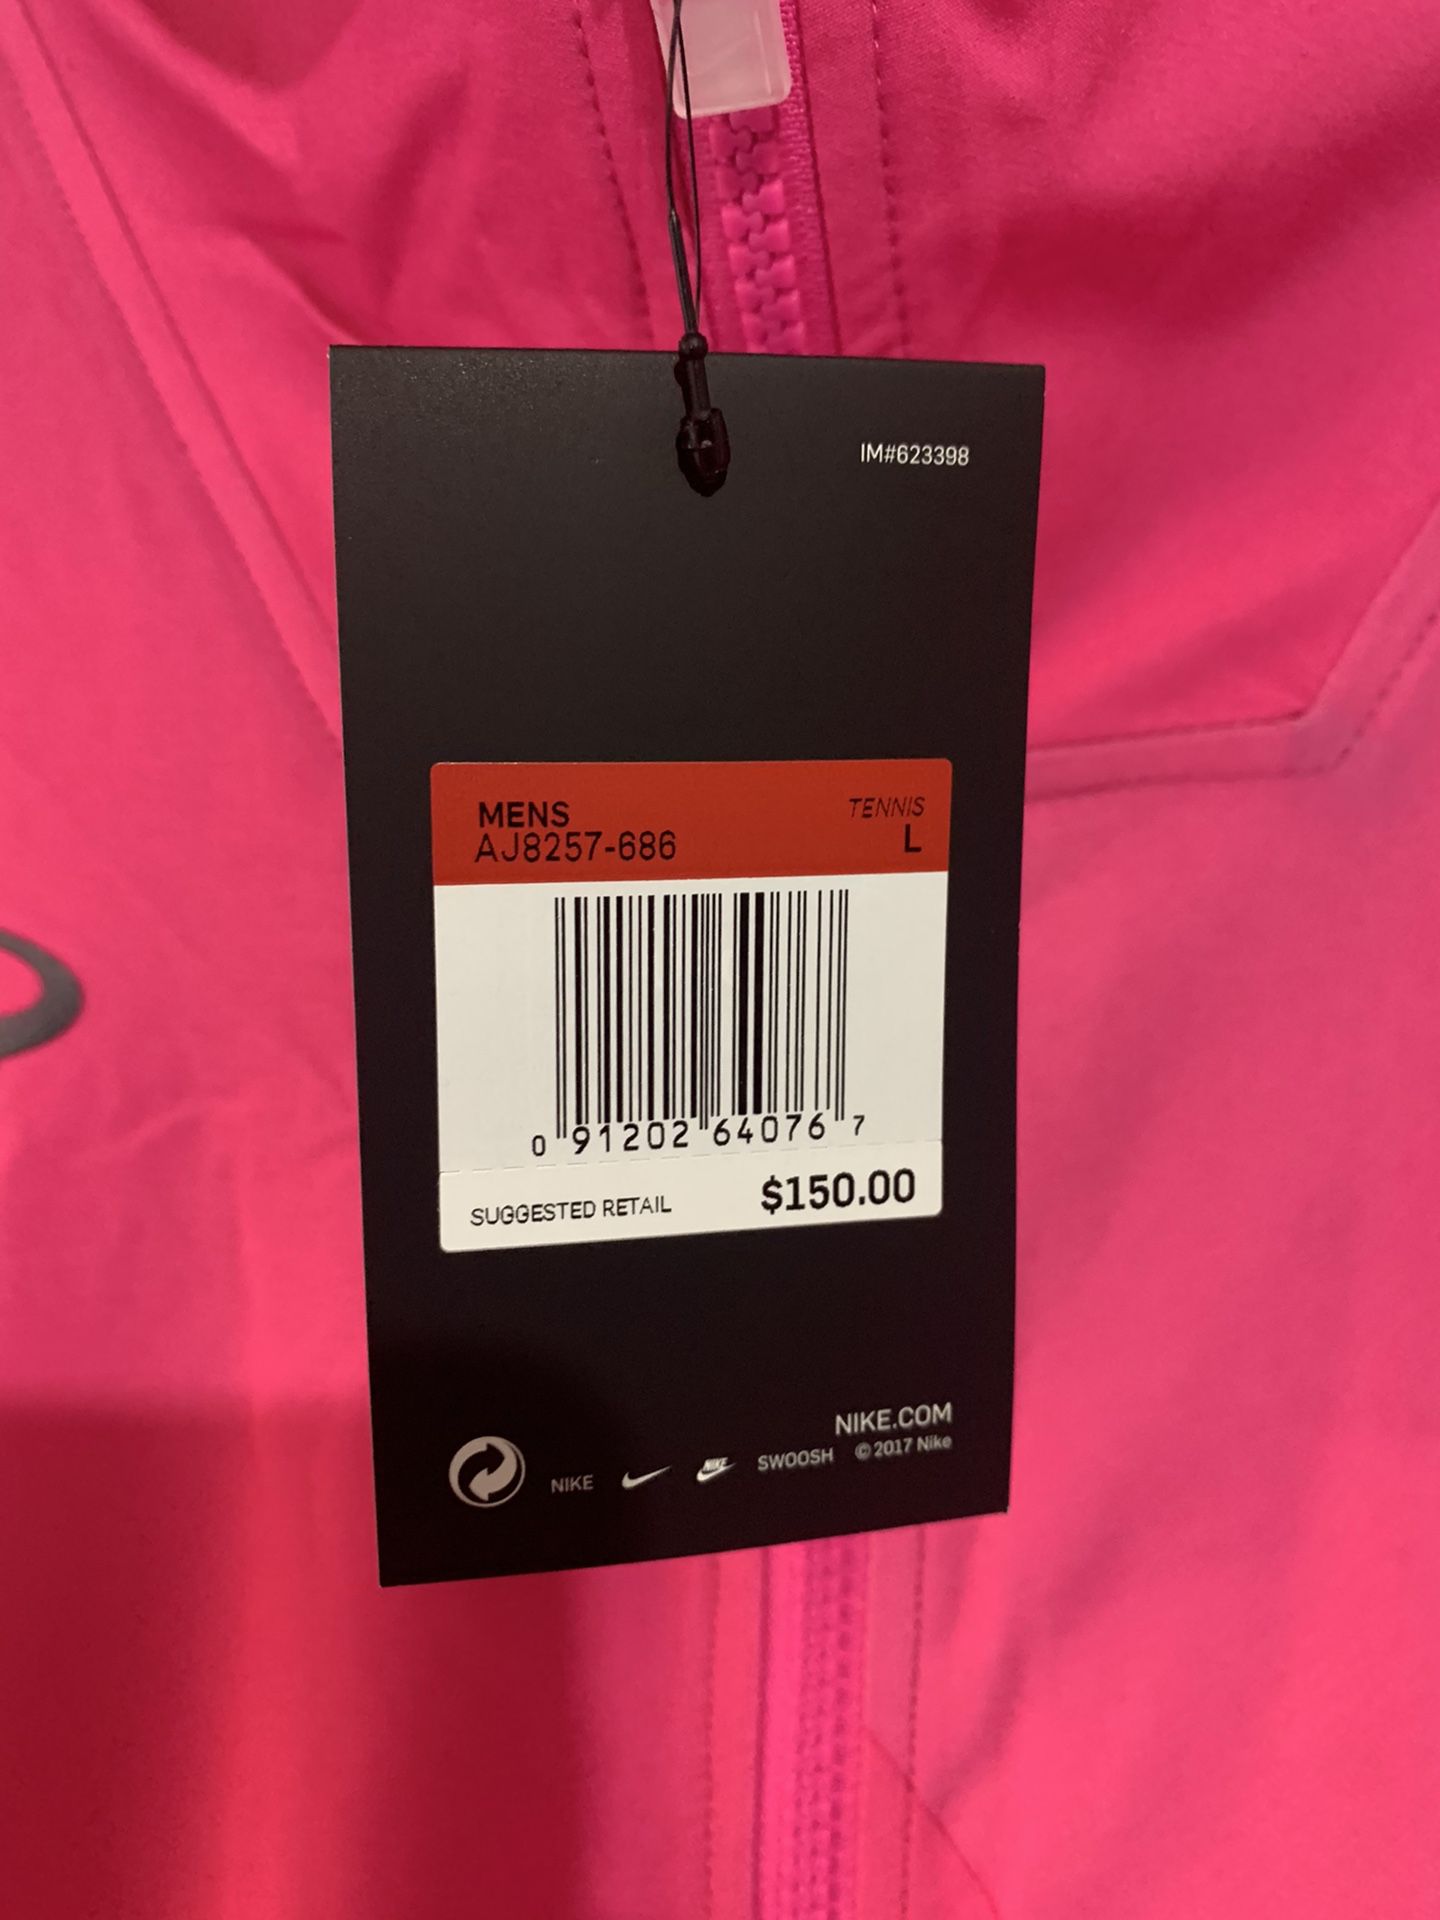 Nike Court Rafa Nadal Full Zip Tennis Jacket Pink Men's Size L AJ8257 686